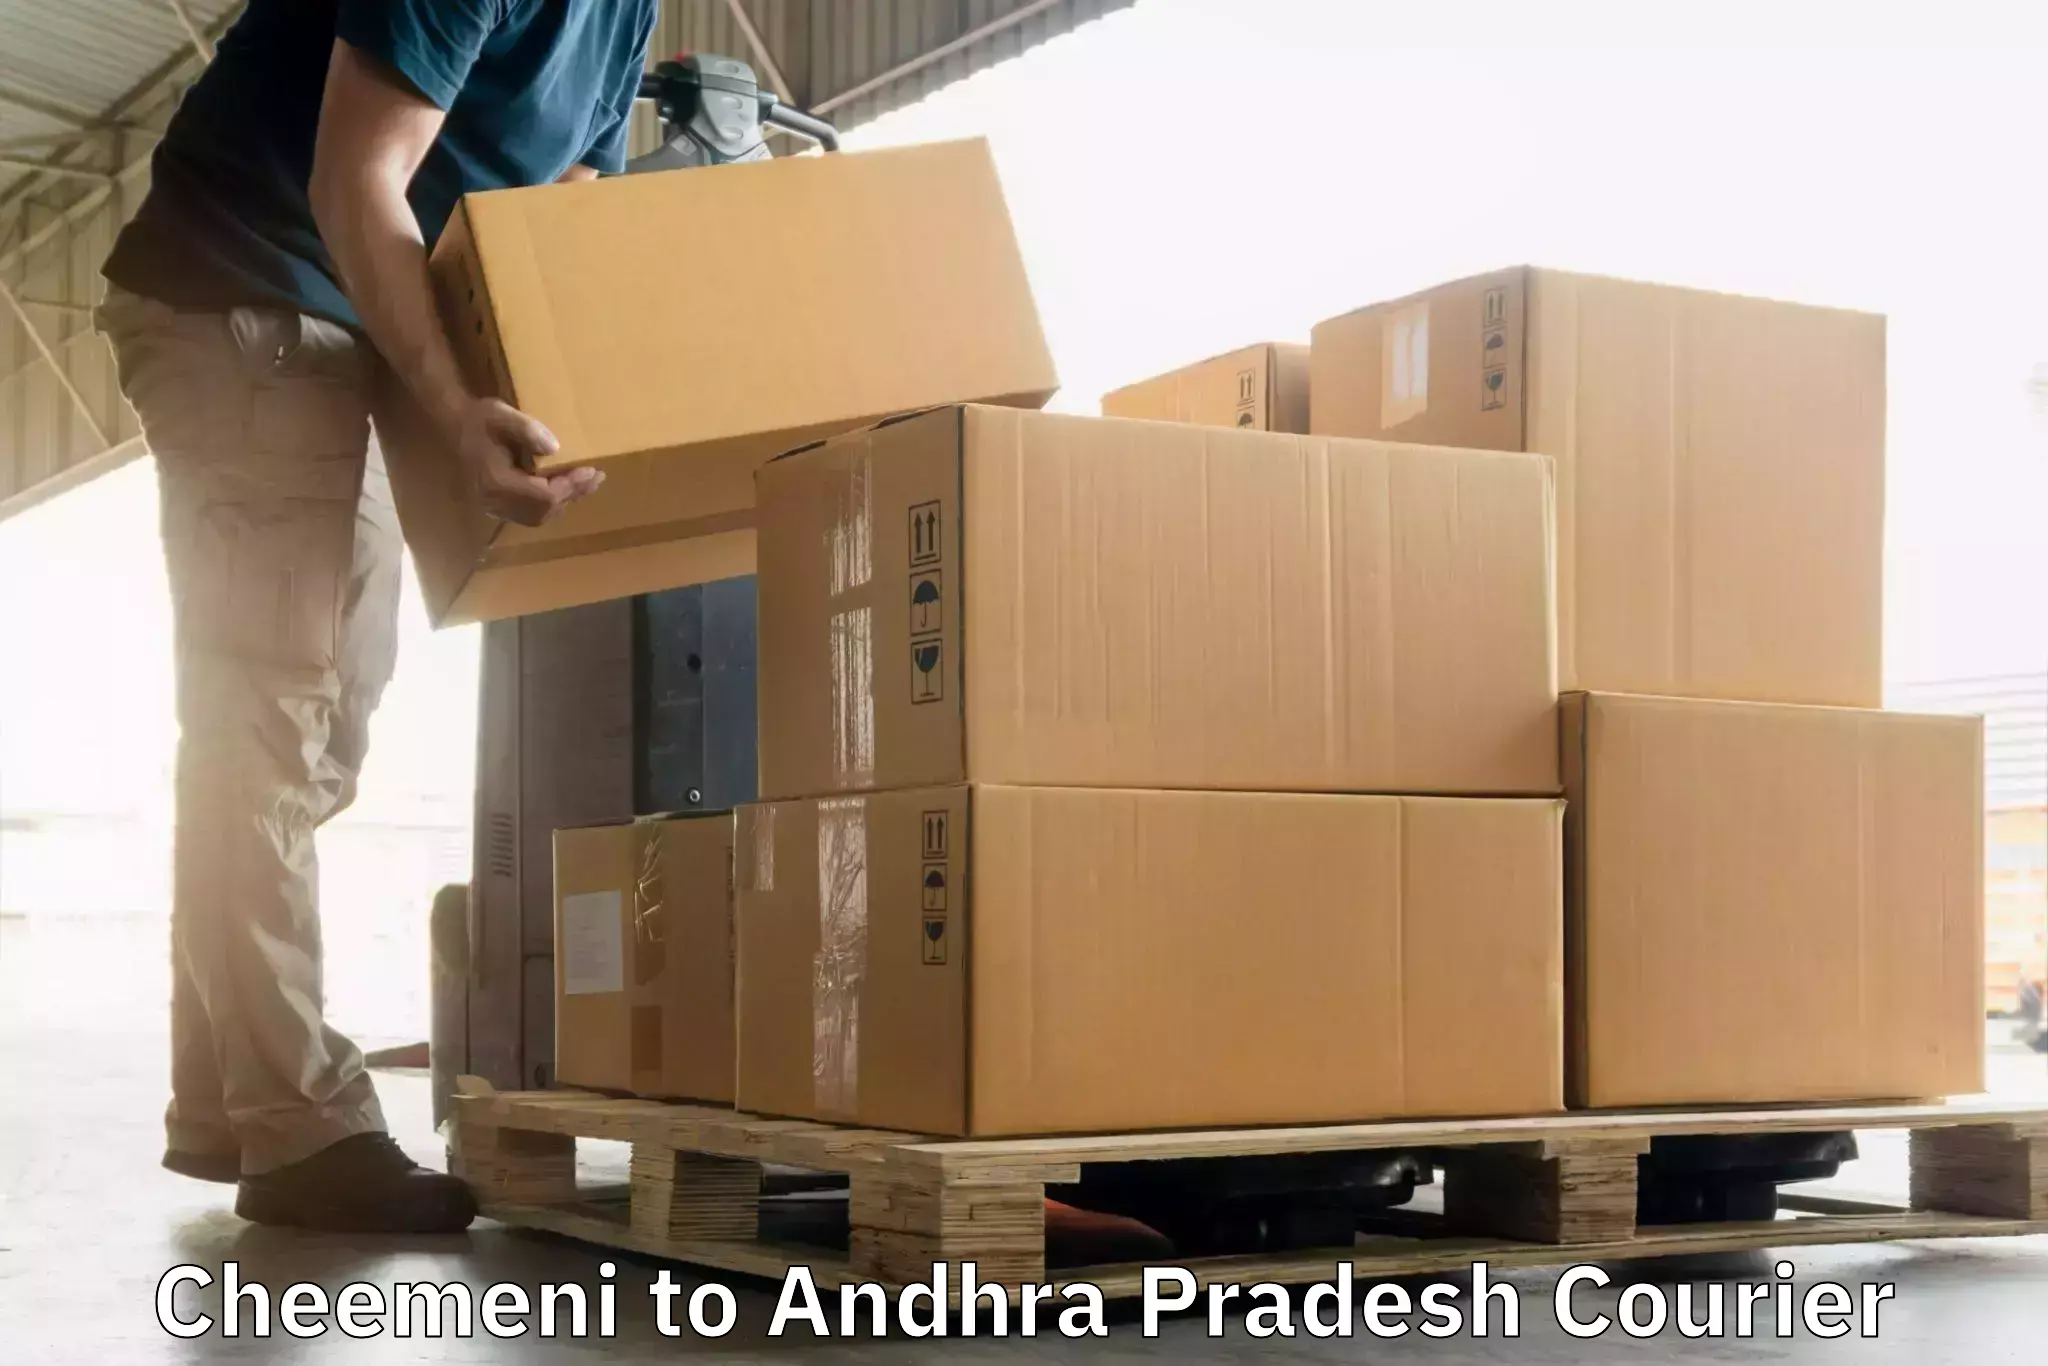 Corporate courier solutions Cheemeni to Amarapuram